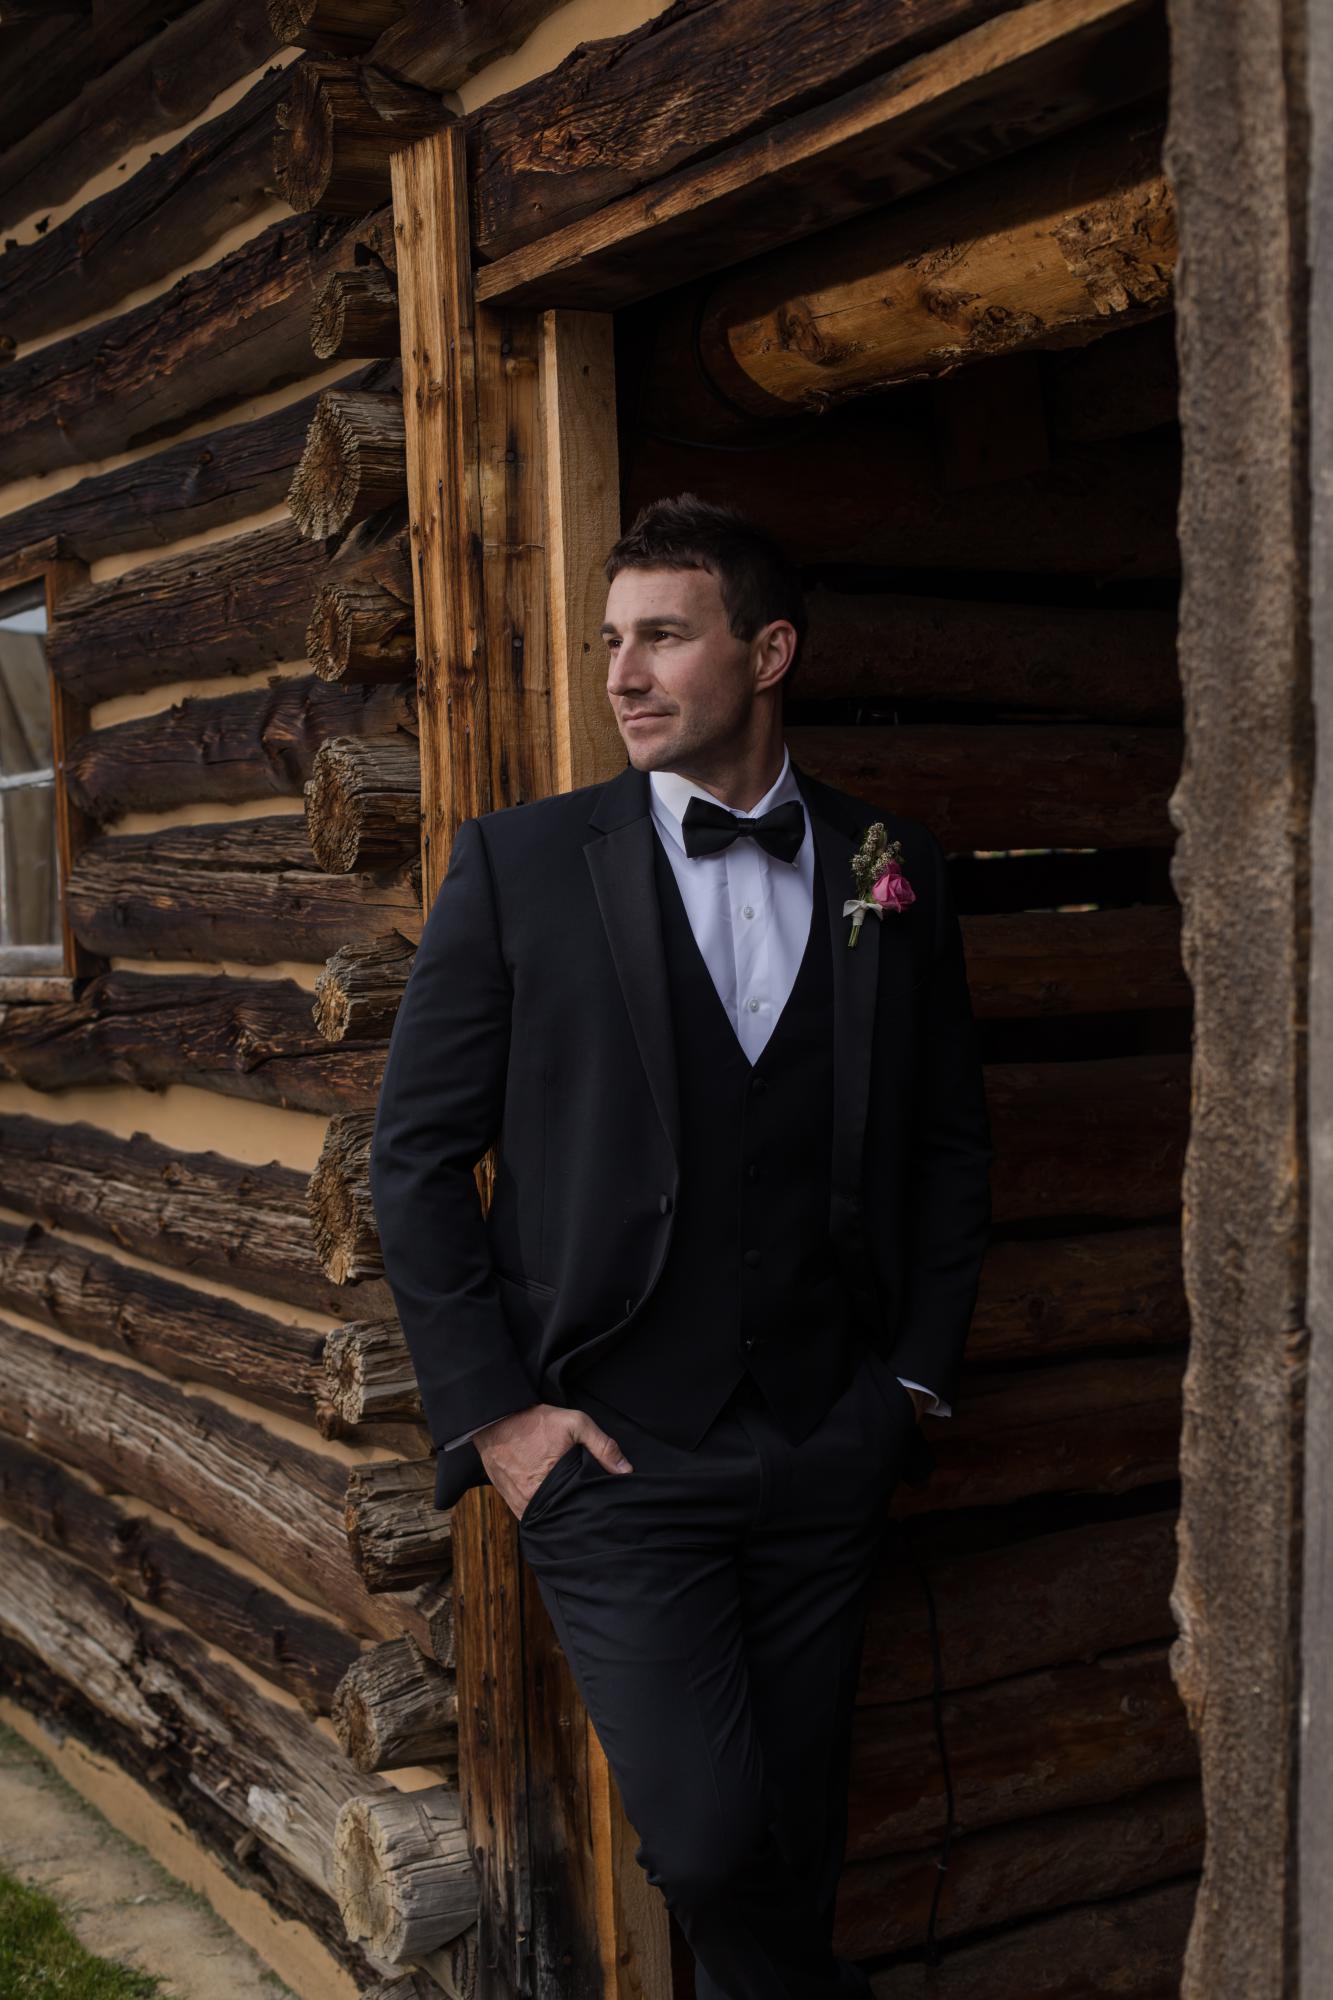 Denver groom at rustic Colorado wedding venue